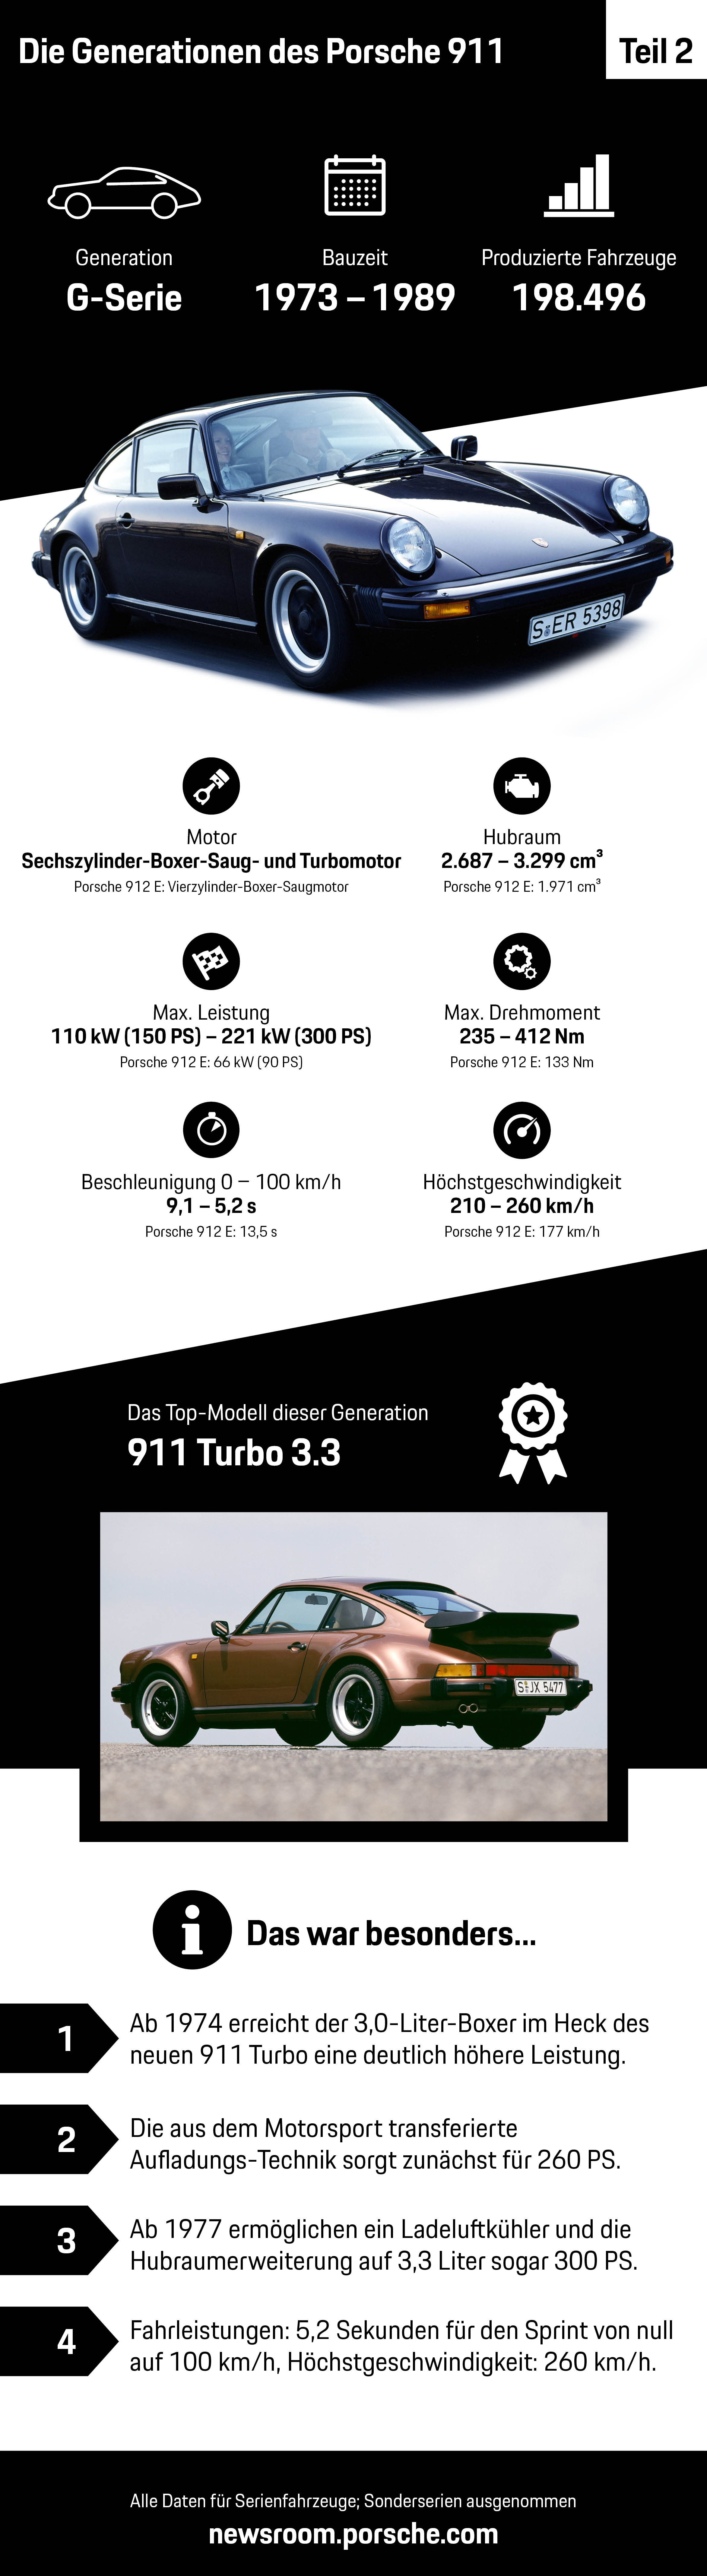 Die Generationen des Porsche 911 – Teil 2, Infografik, 2018, Porsche AG